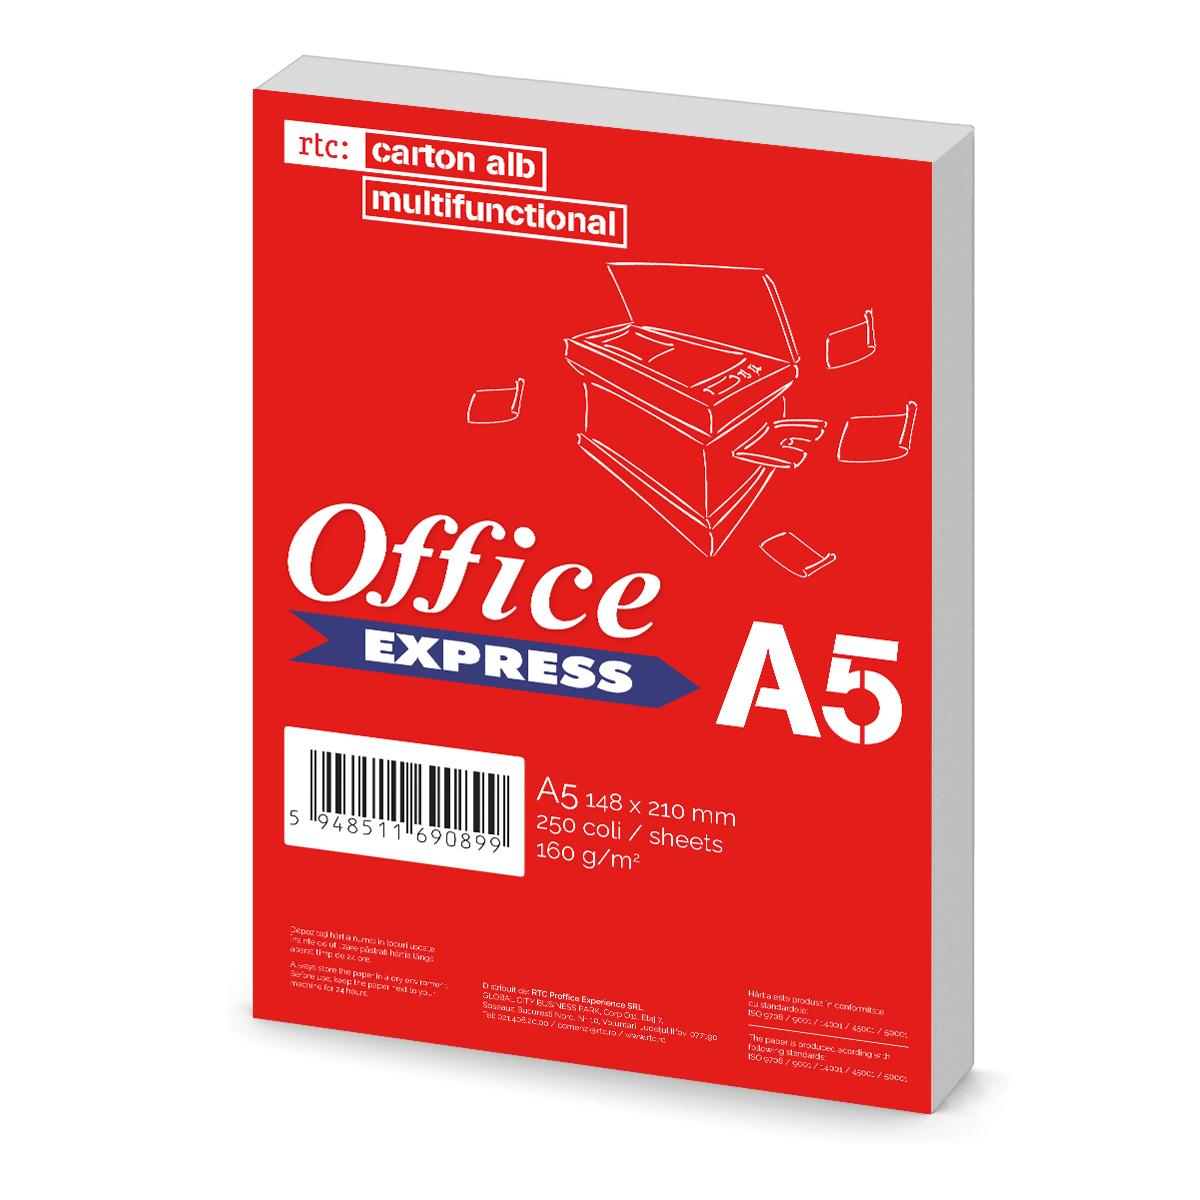 Carton alb Office Express A5, 160g, 250 coli/top